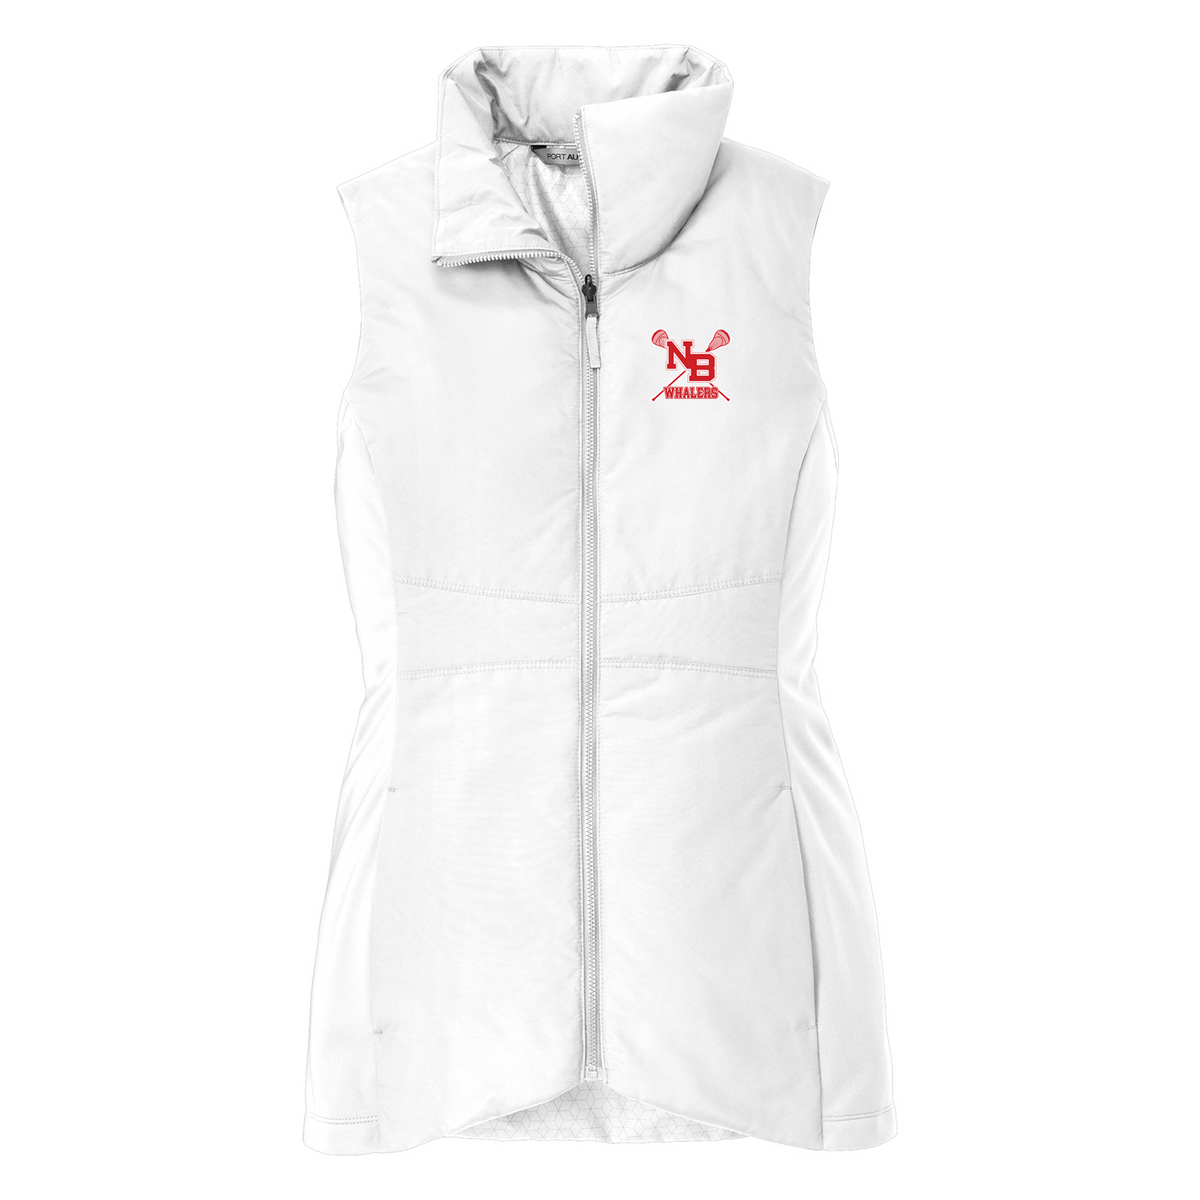 New Bedford Lacrosse Women's Vest